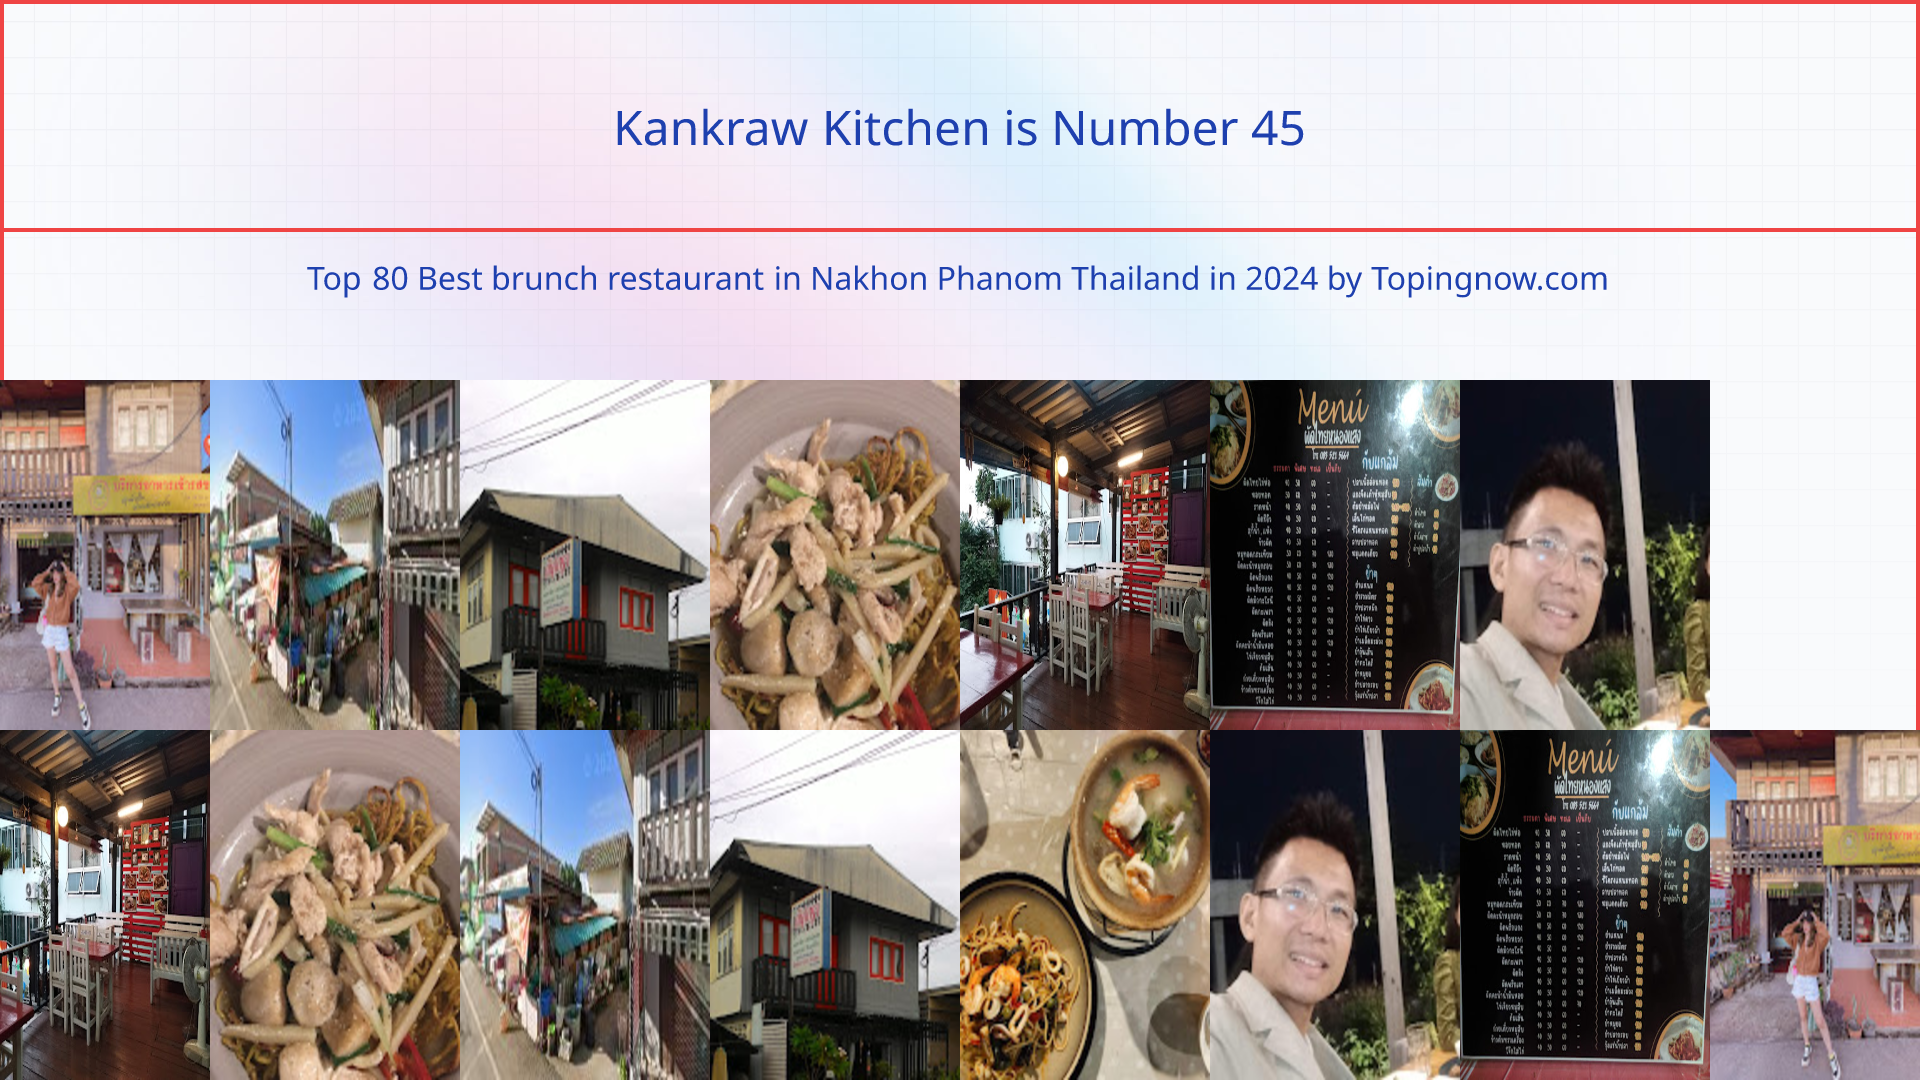 Kankraw Kitchen: Top 80 Best brunch restaurant in Nakhon Phanom Thailand in 2024